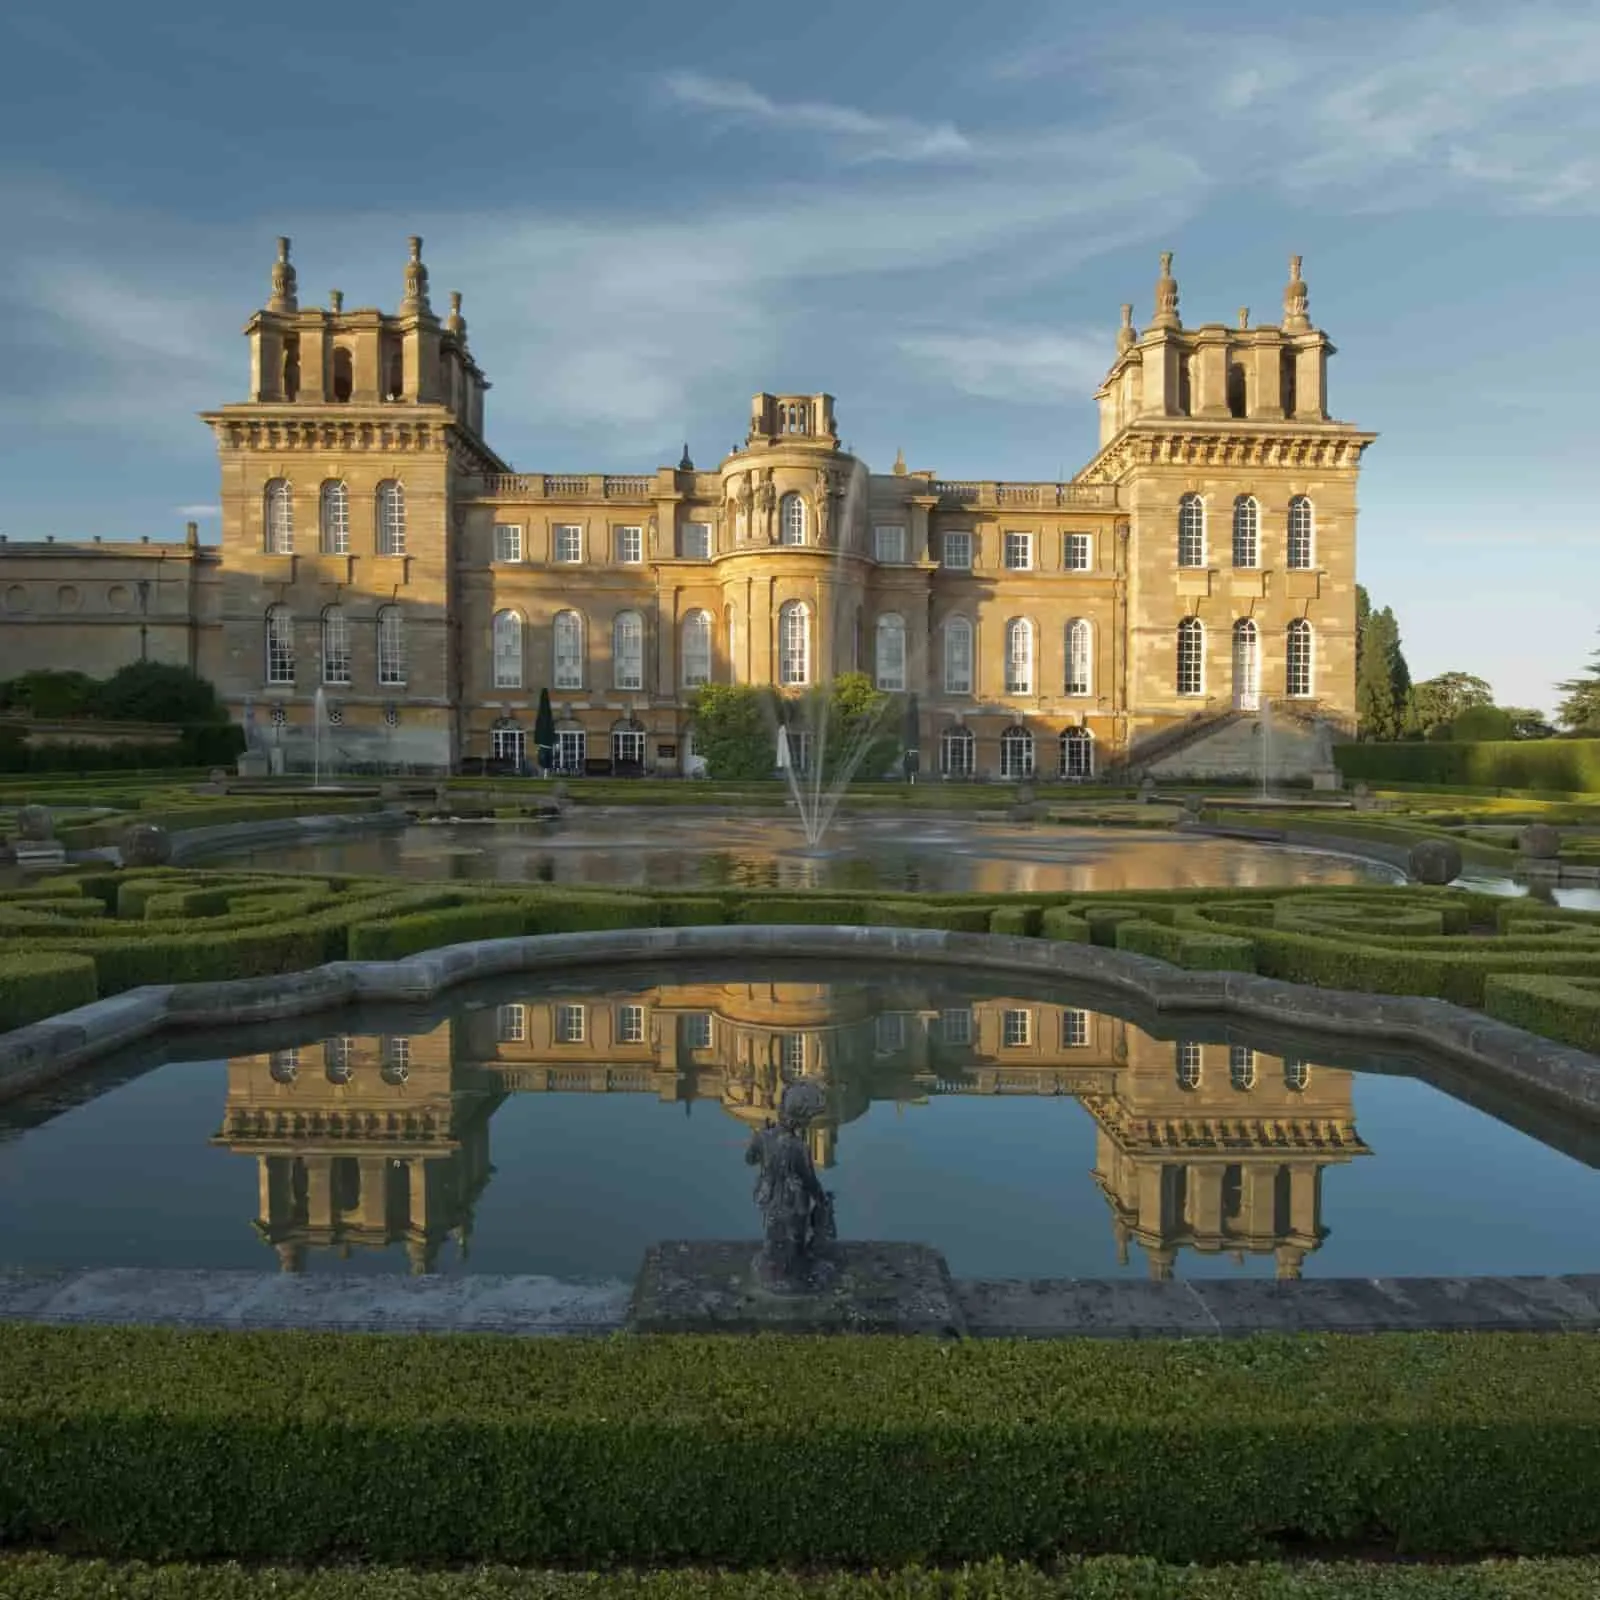 قصر بلينهايم ، القصر الوحيد غير الملكي في إنجلترا ، مقابل السماء الزرقاء.